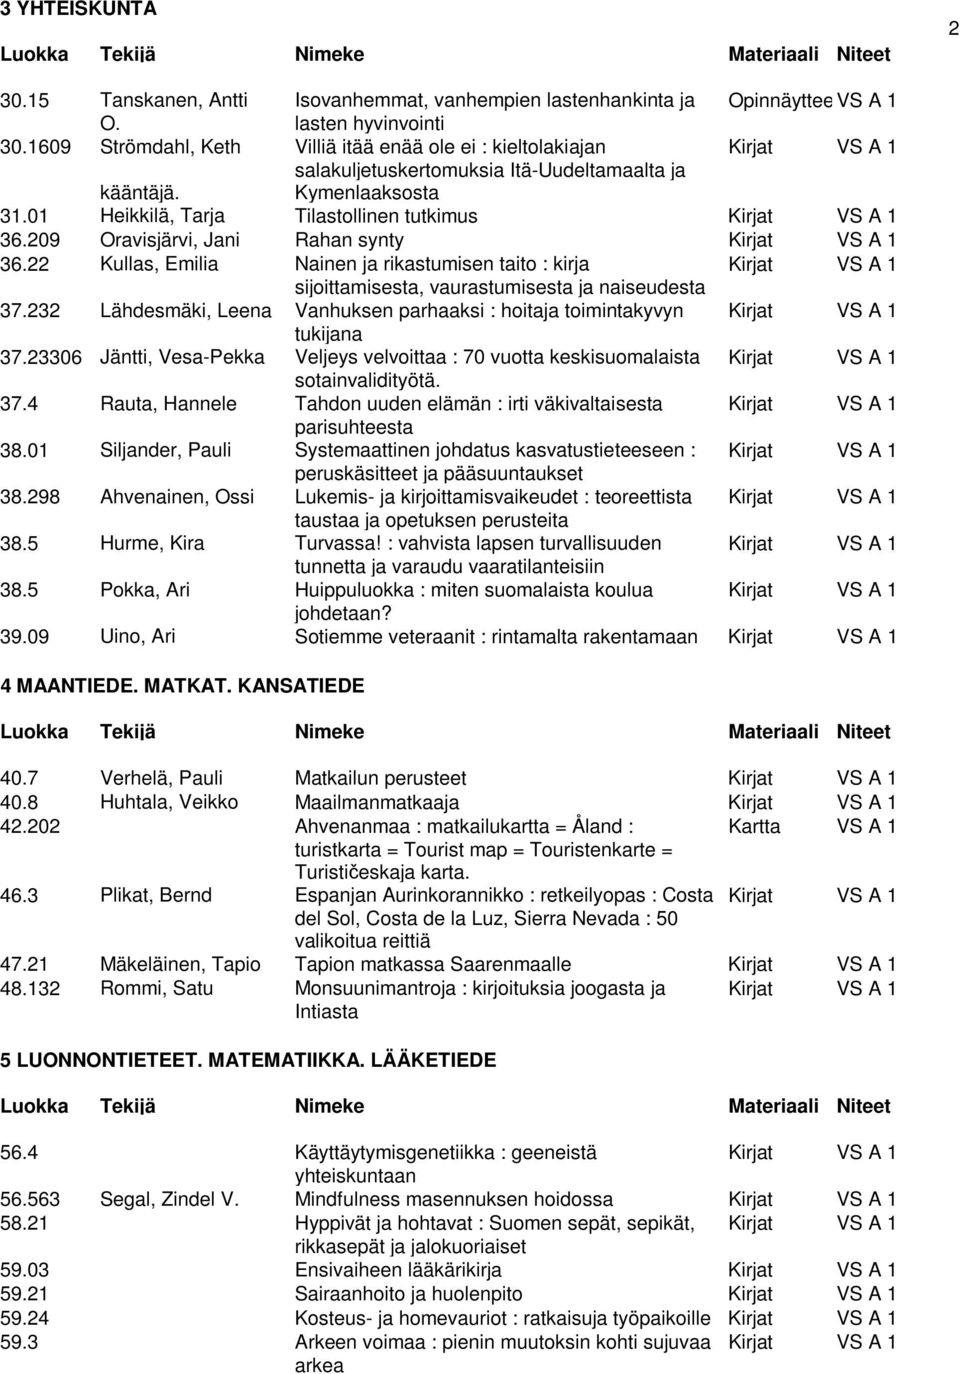 01 Heikkilä, Tarja Tilastollinen tutkimus Kirjat VS A 1 36.209 Oravisjärvi, Jani Rahan synty Kirjat VS A 1 36.